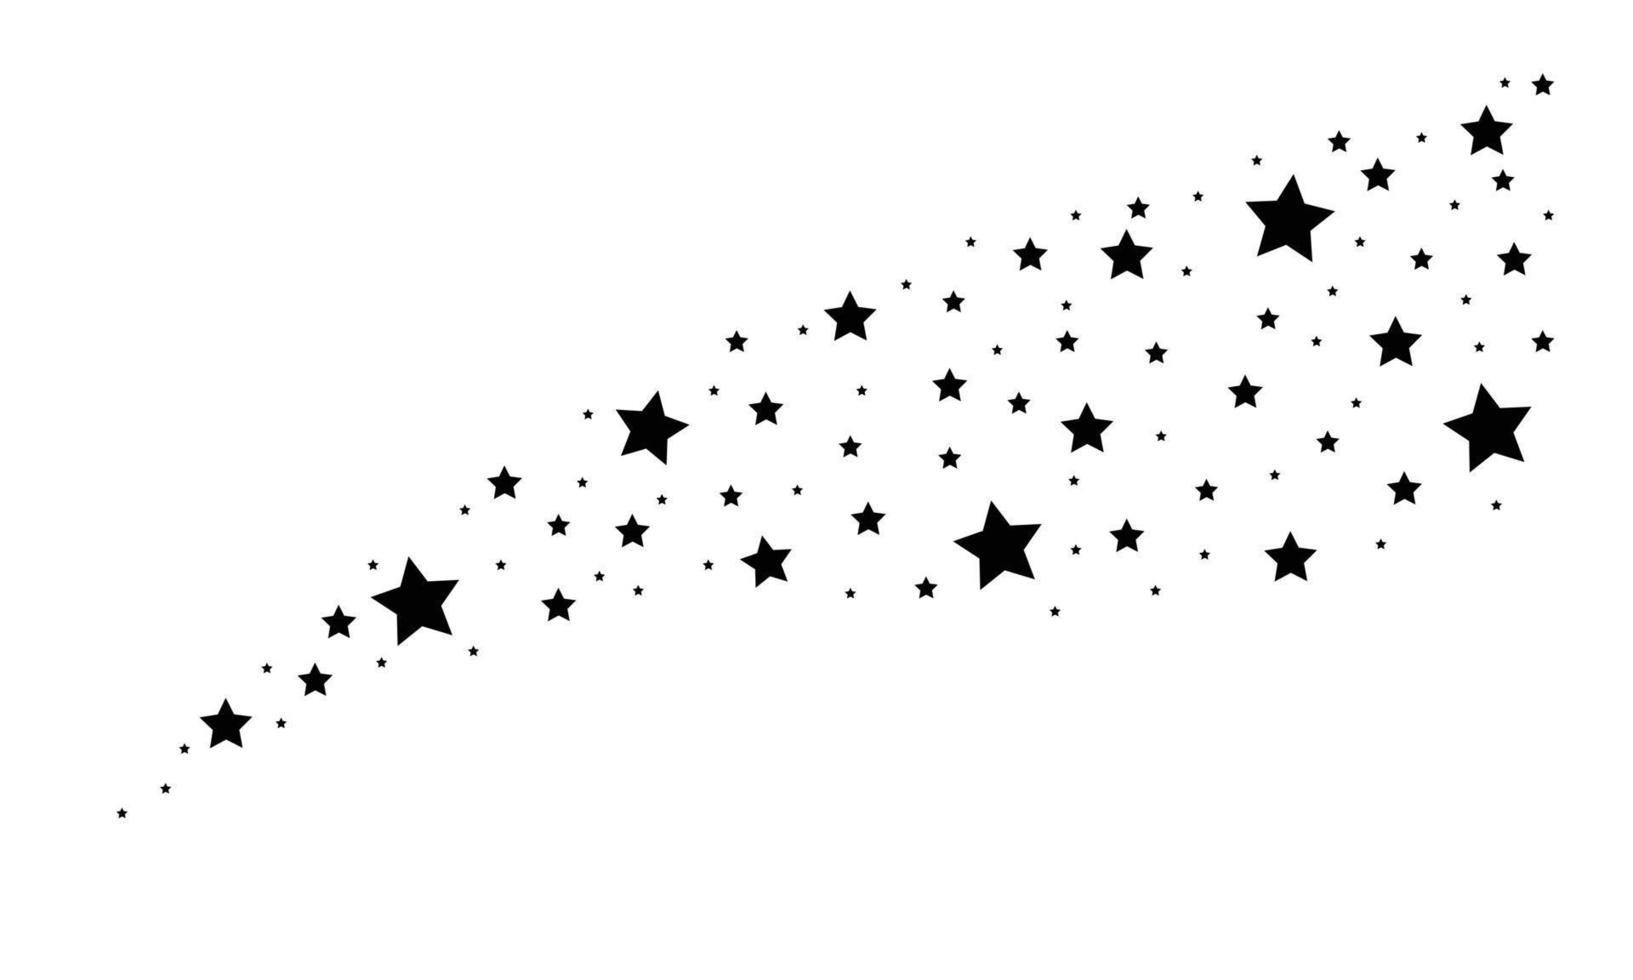 fluxo de fogos de artifício aleatório de estrela sparcle. estilo de ilustração vetorial é símbolos icônicos azuis lisos em um fundo branco. fonte de objetos organizada a partir de pictogramas dispersos. vetor